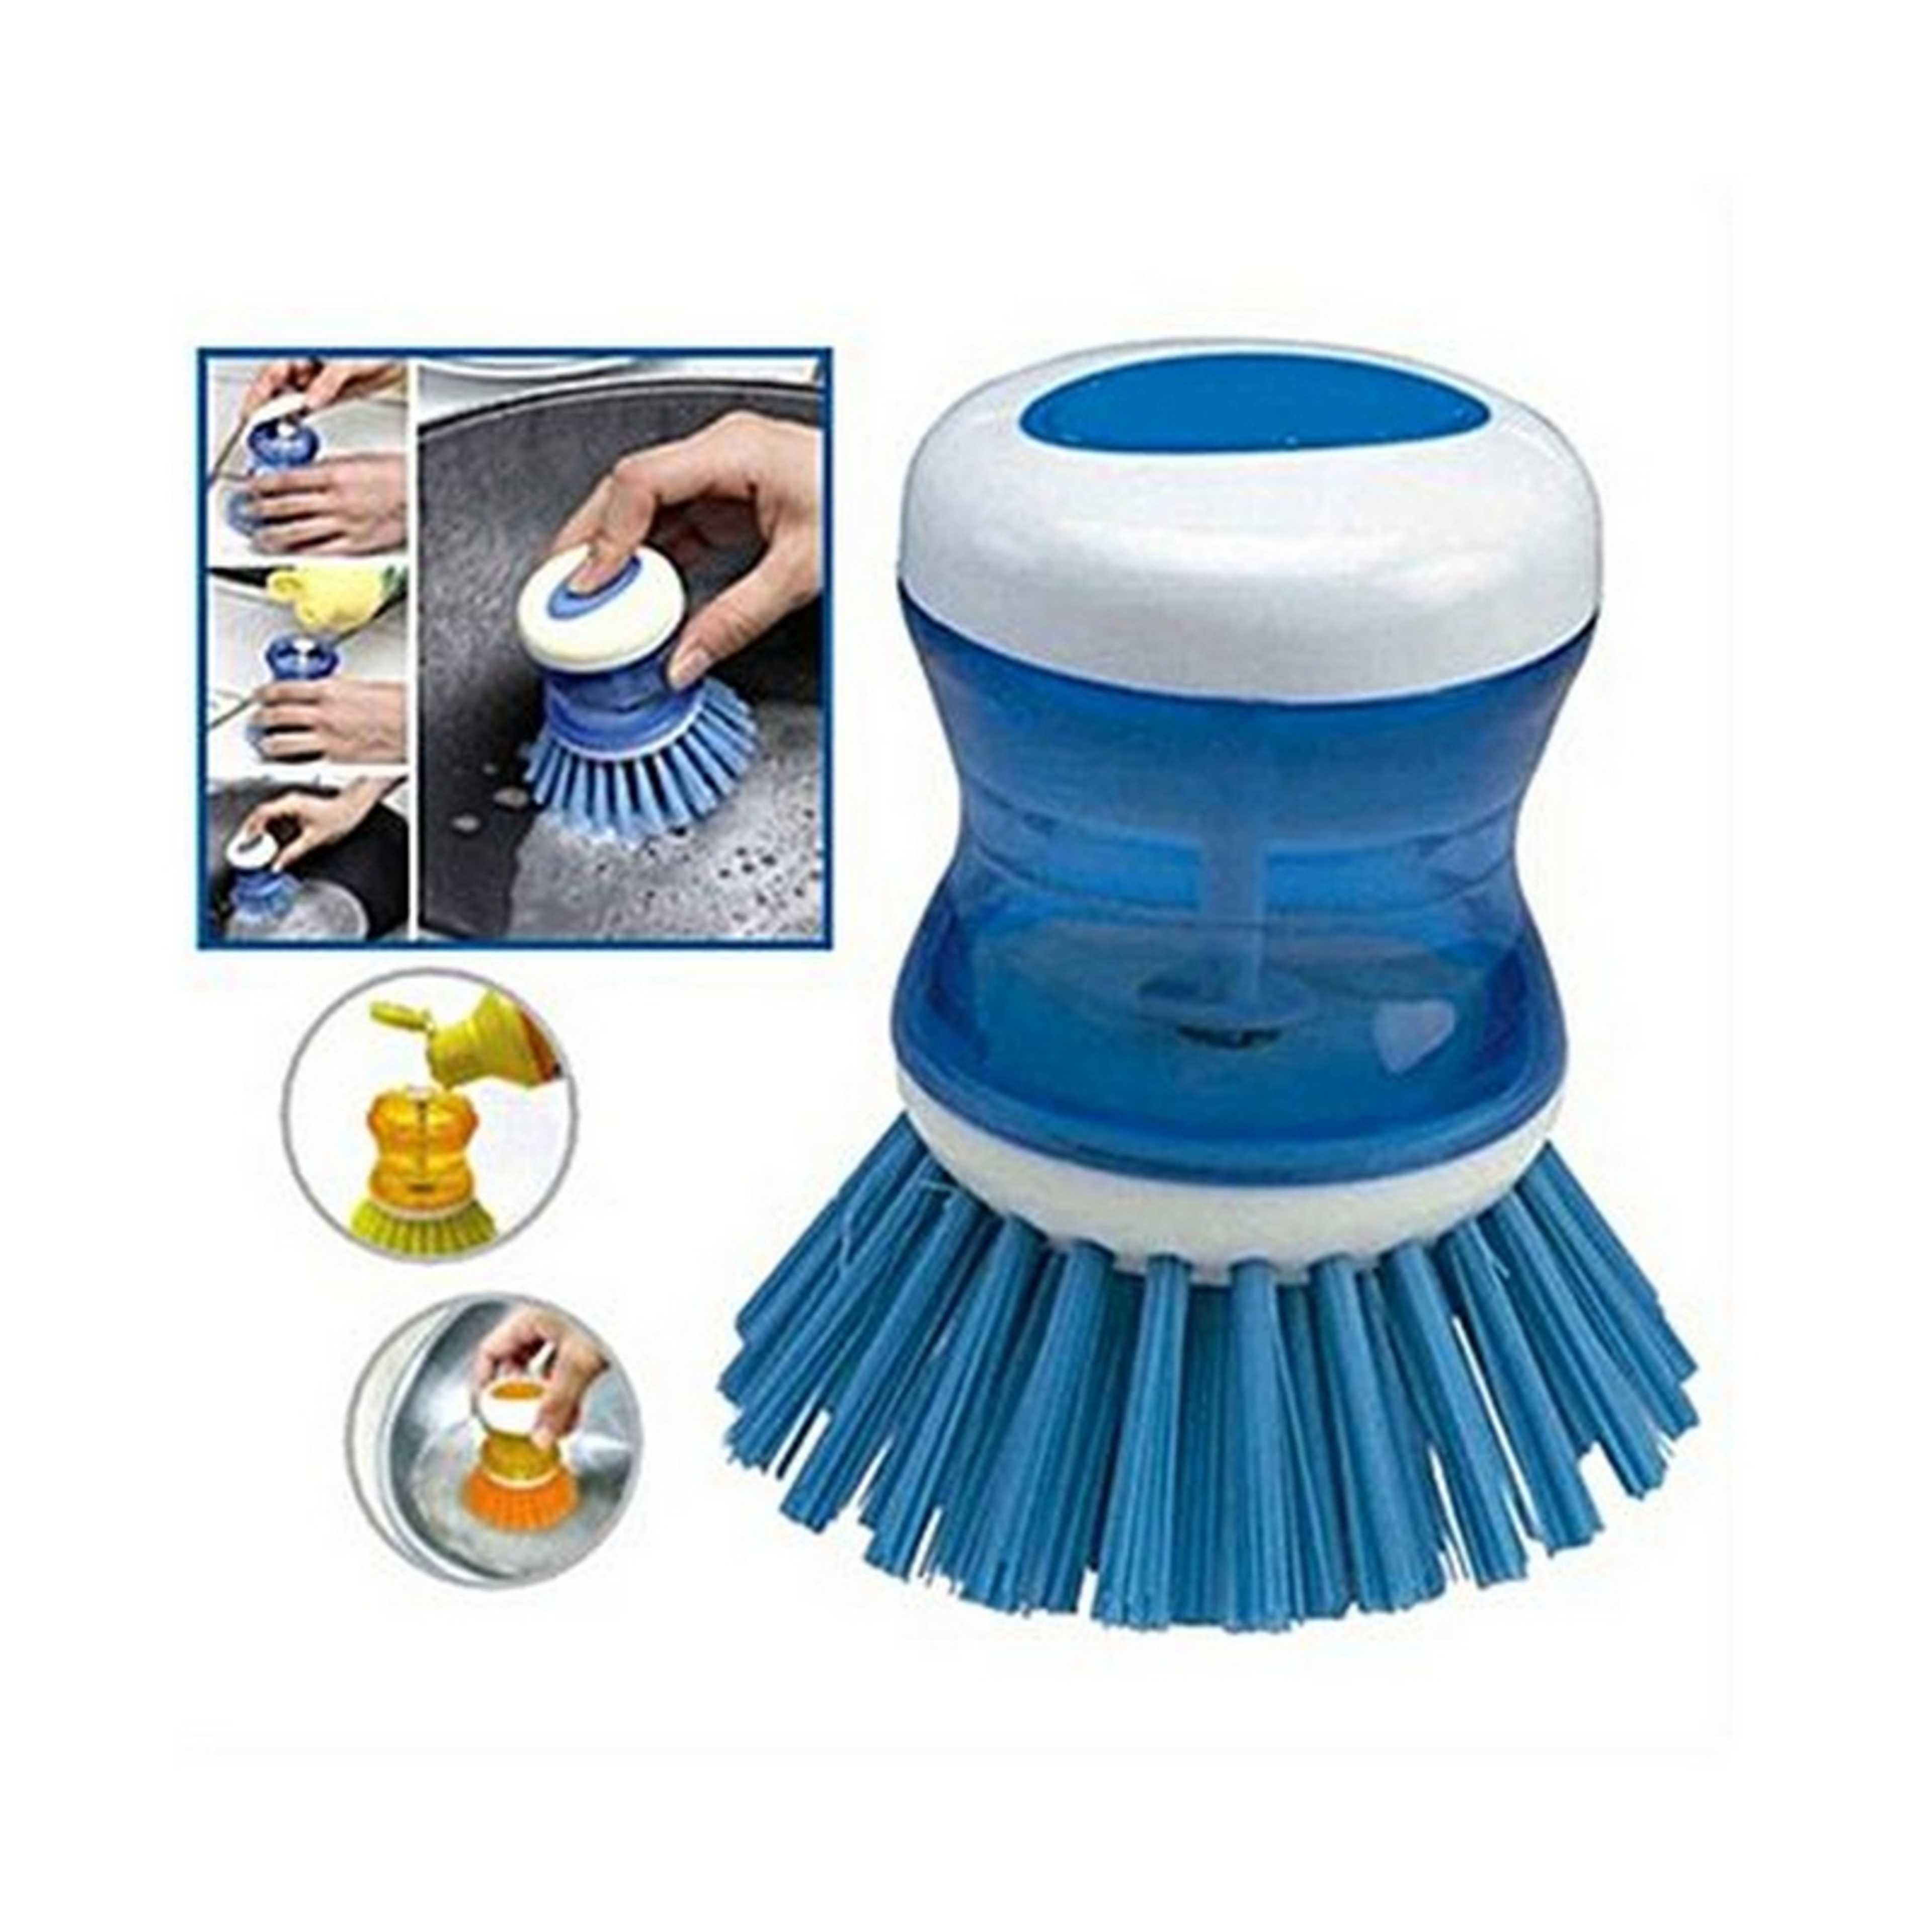 Scrub Kitchen Wash Tool Pot Dish Plastic Brush With Washing Up Liquid Soap Dispenser Brush